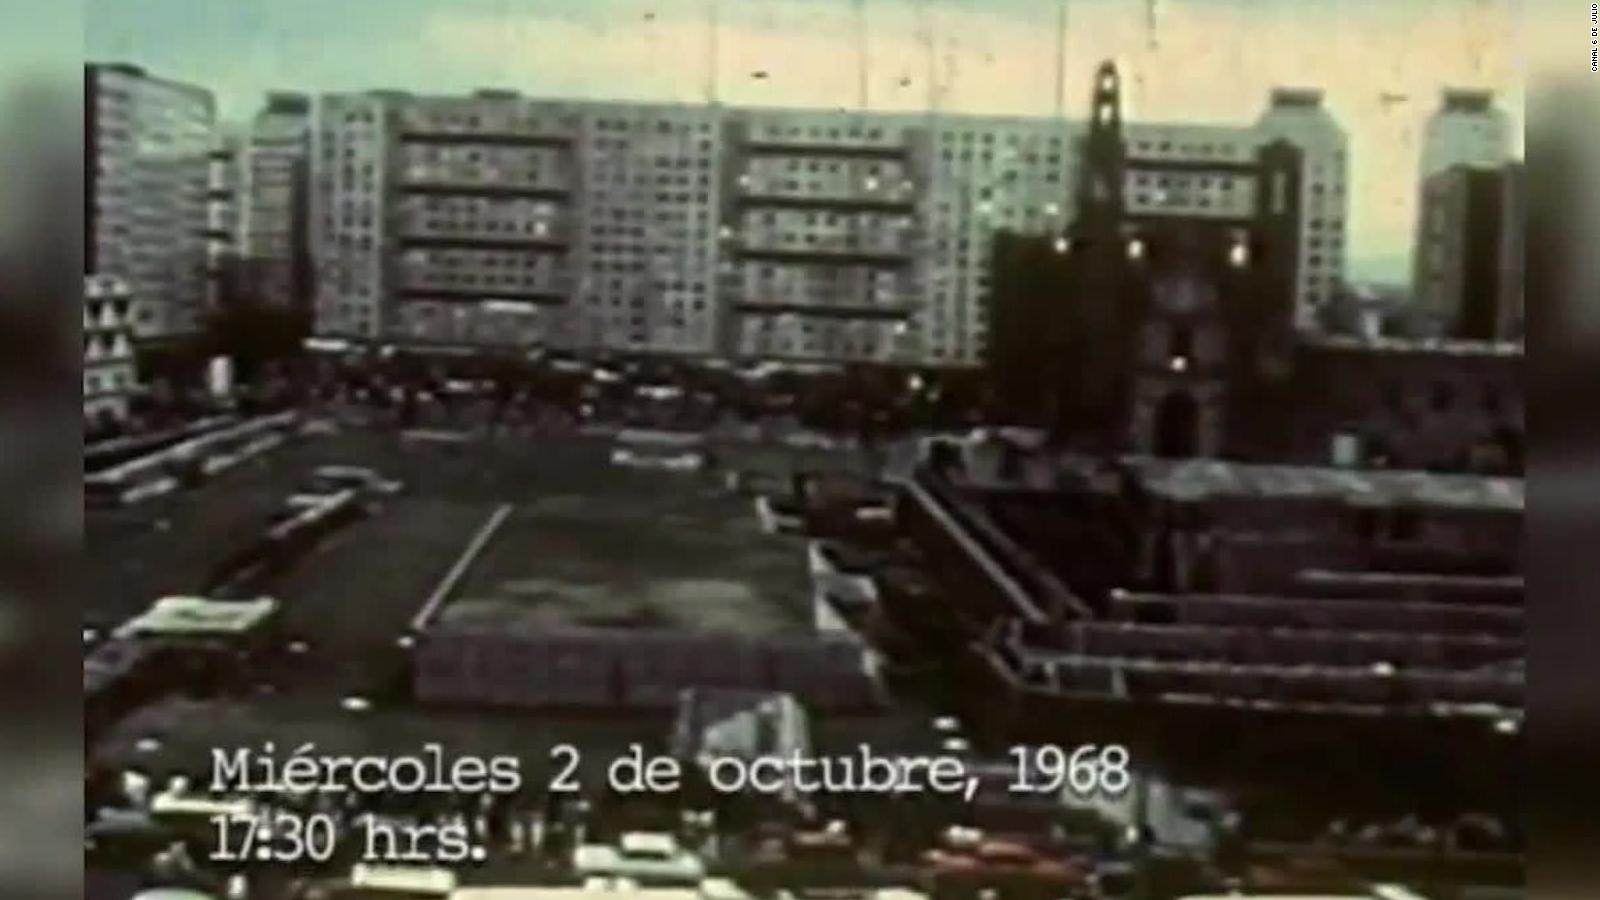 2 De Octubre No Se Olvida Tras 50 Años Los Sobrevivientes De La Masacre De Tlatelolco Buscan